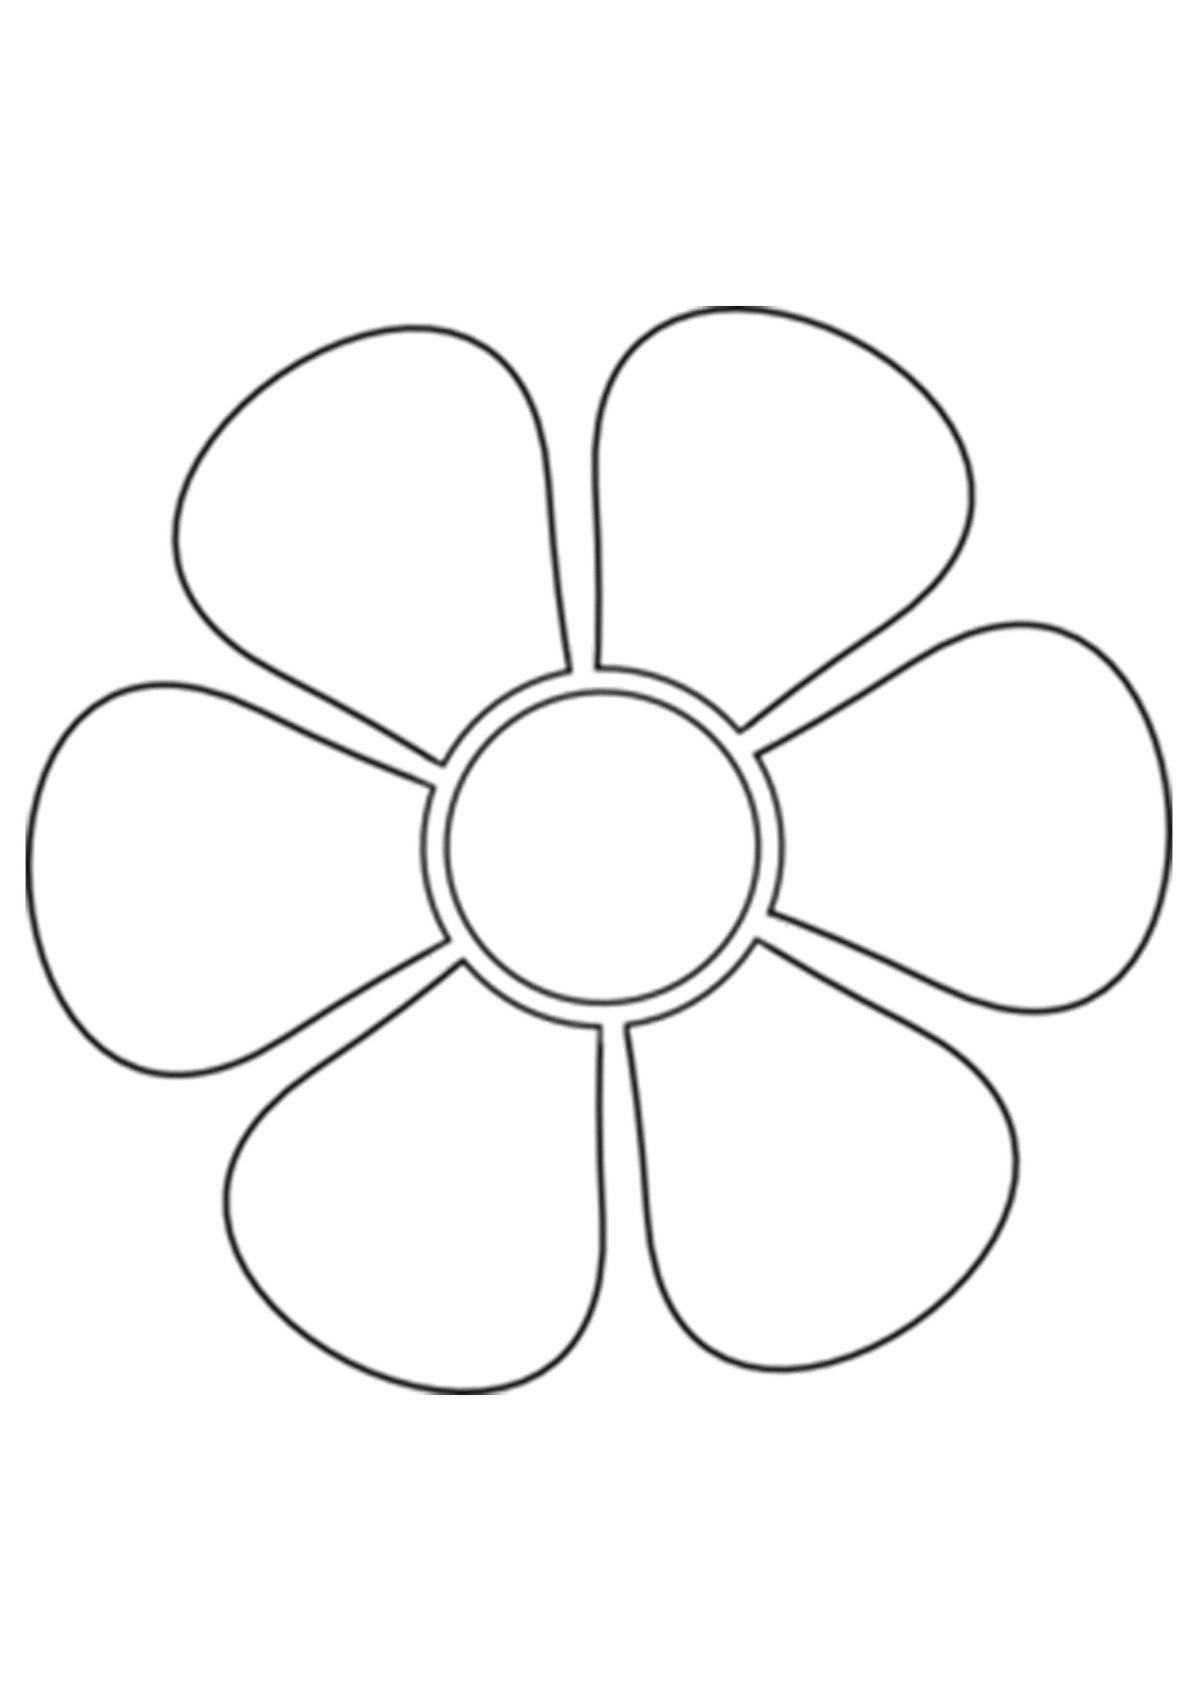 Лучистая раскраска цветок семицветик для детей 3-4 лет